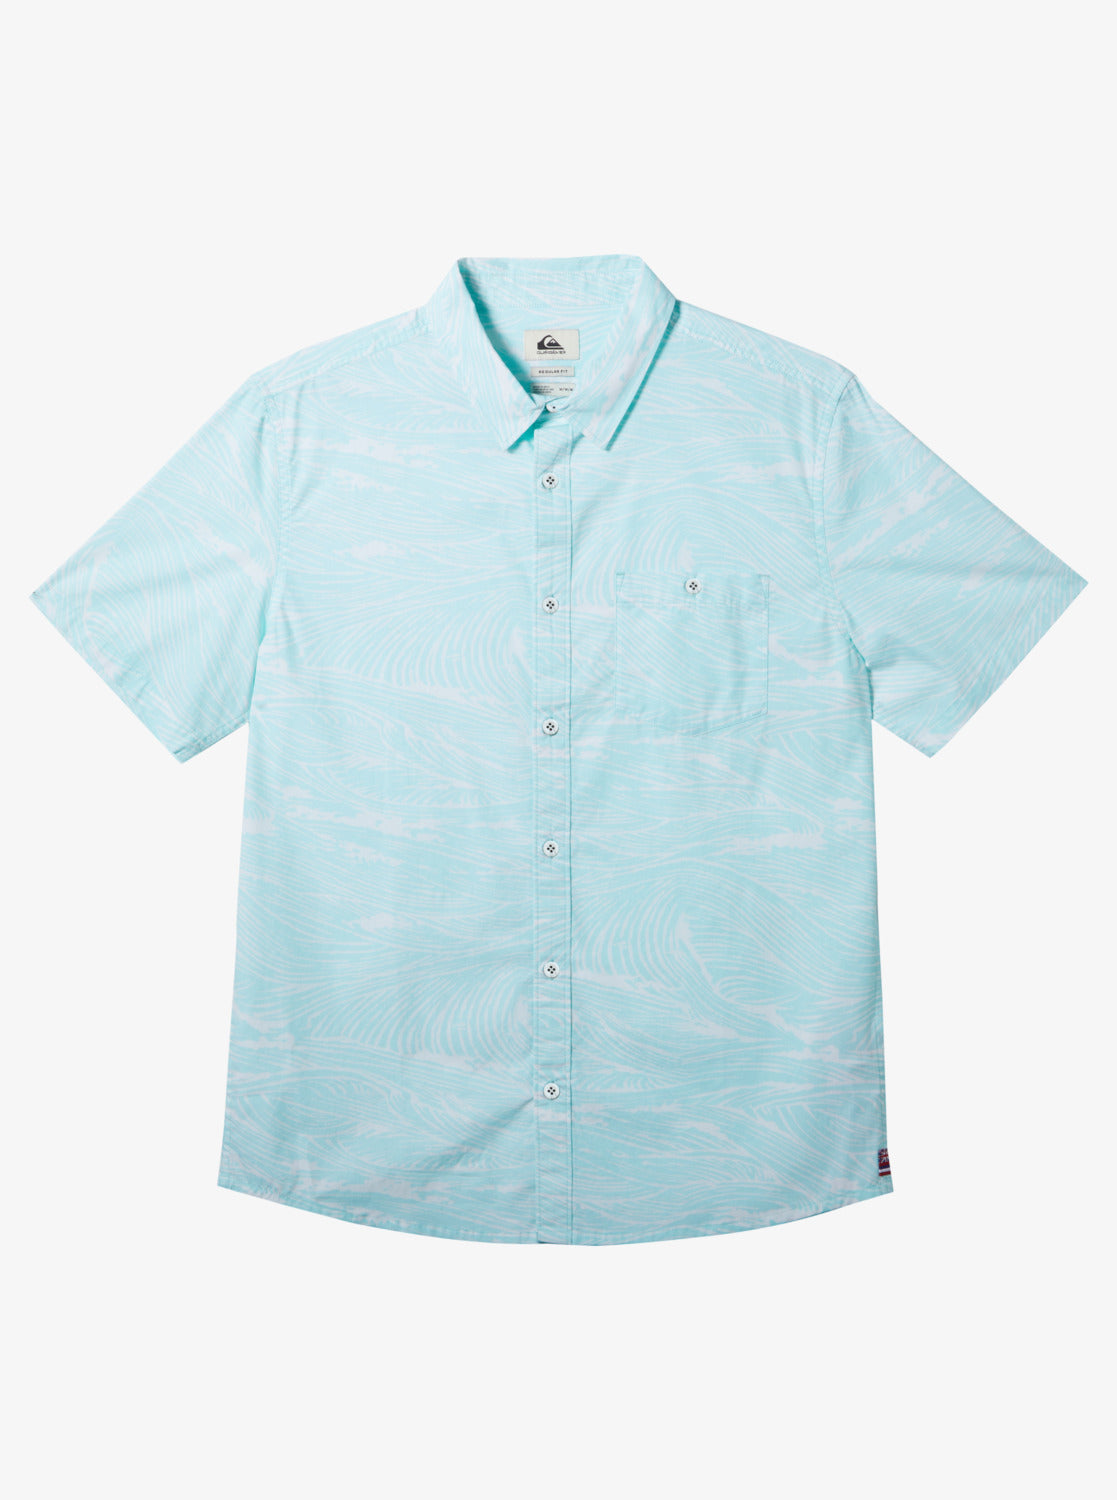 Hawaii Flow Woven Hawaiian Shirt - Limpet Shell – Quiksilver